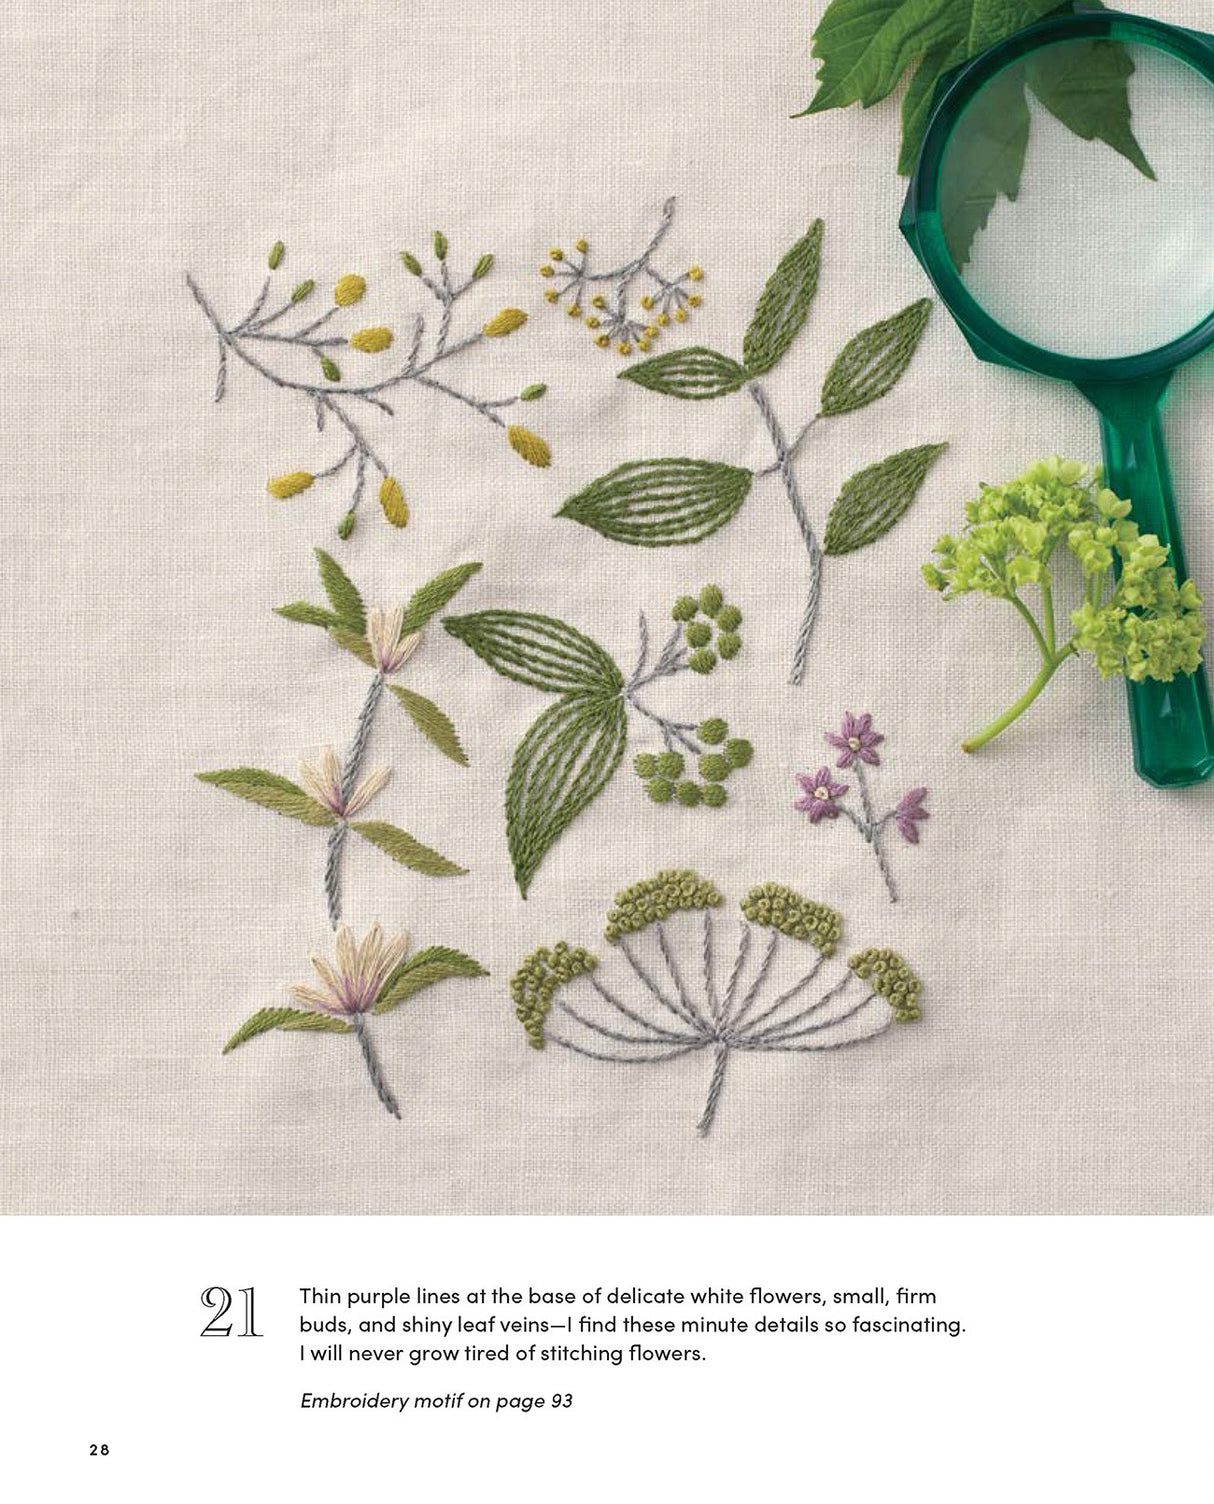 Beautiful Botanical Embroidery